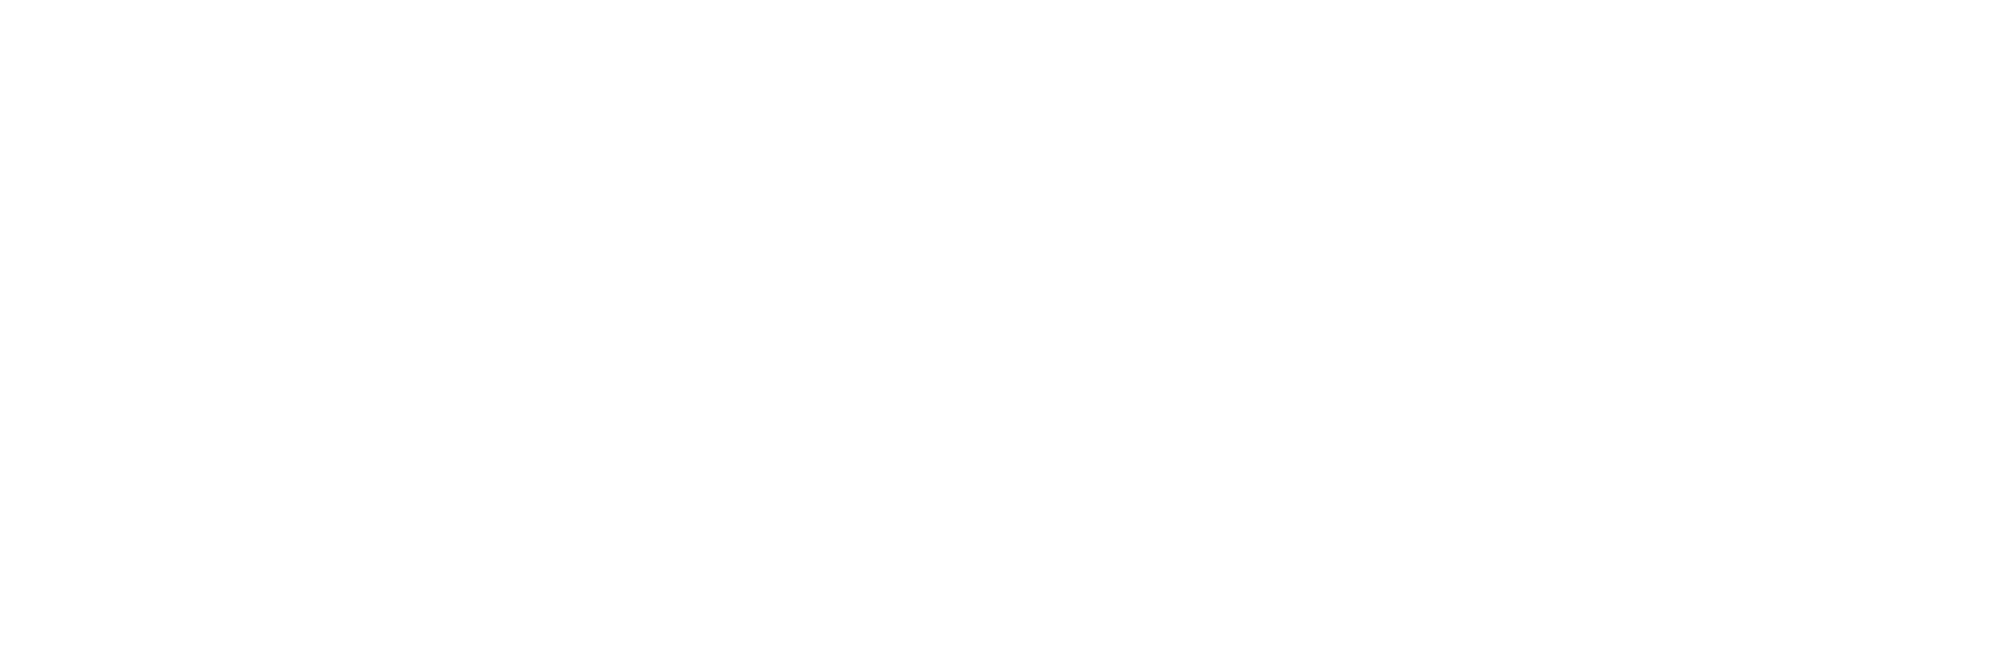 Fraunhofer_Weißgrau-02